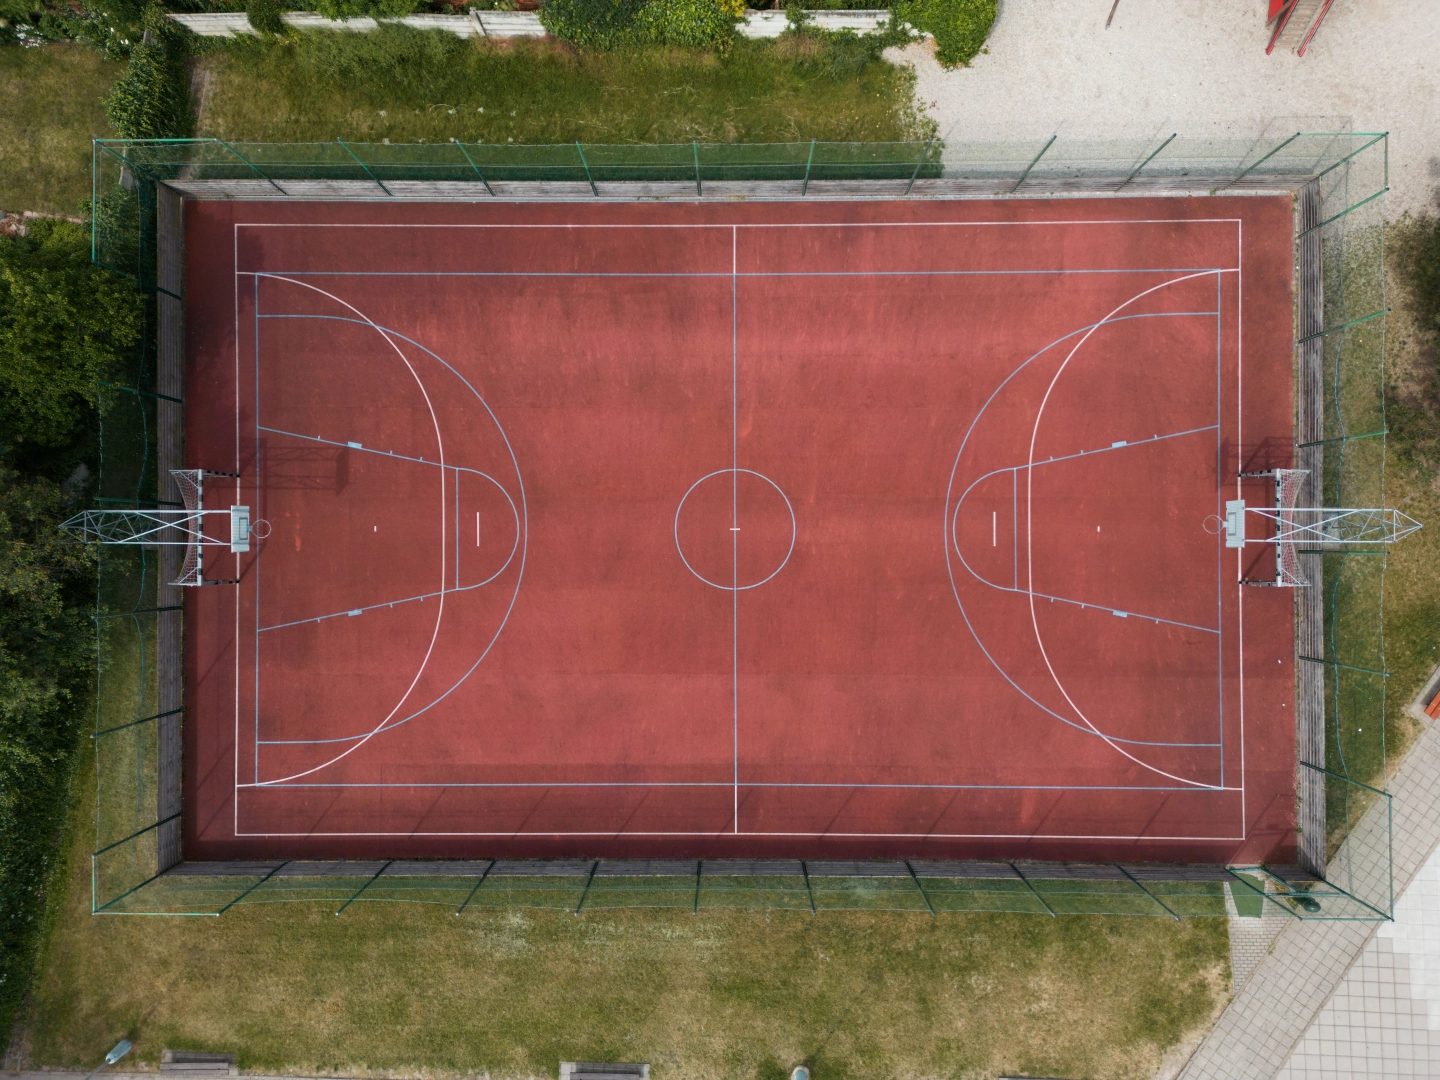 Basketbalista Vít Krejčí spolu s NBA otevřel nové hřiště v Písku